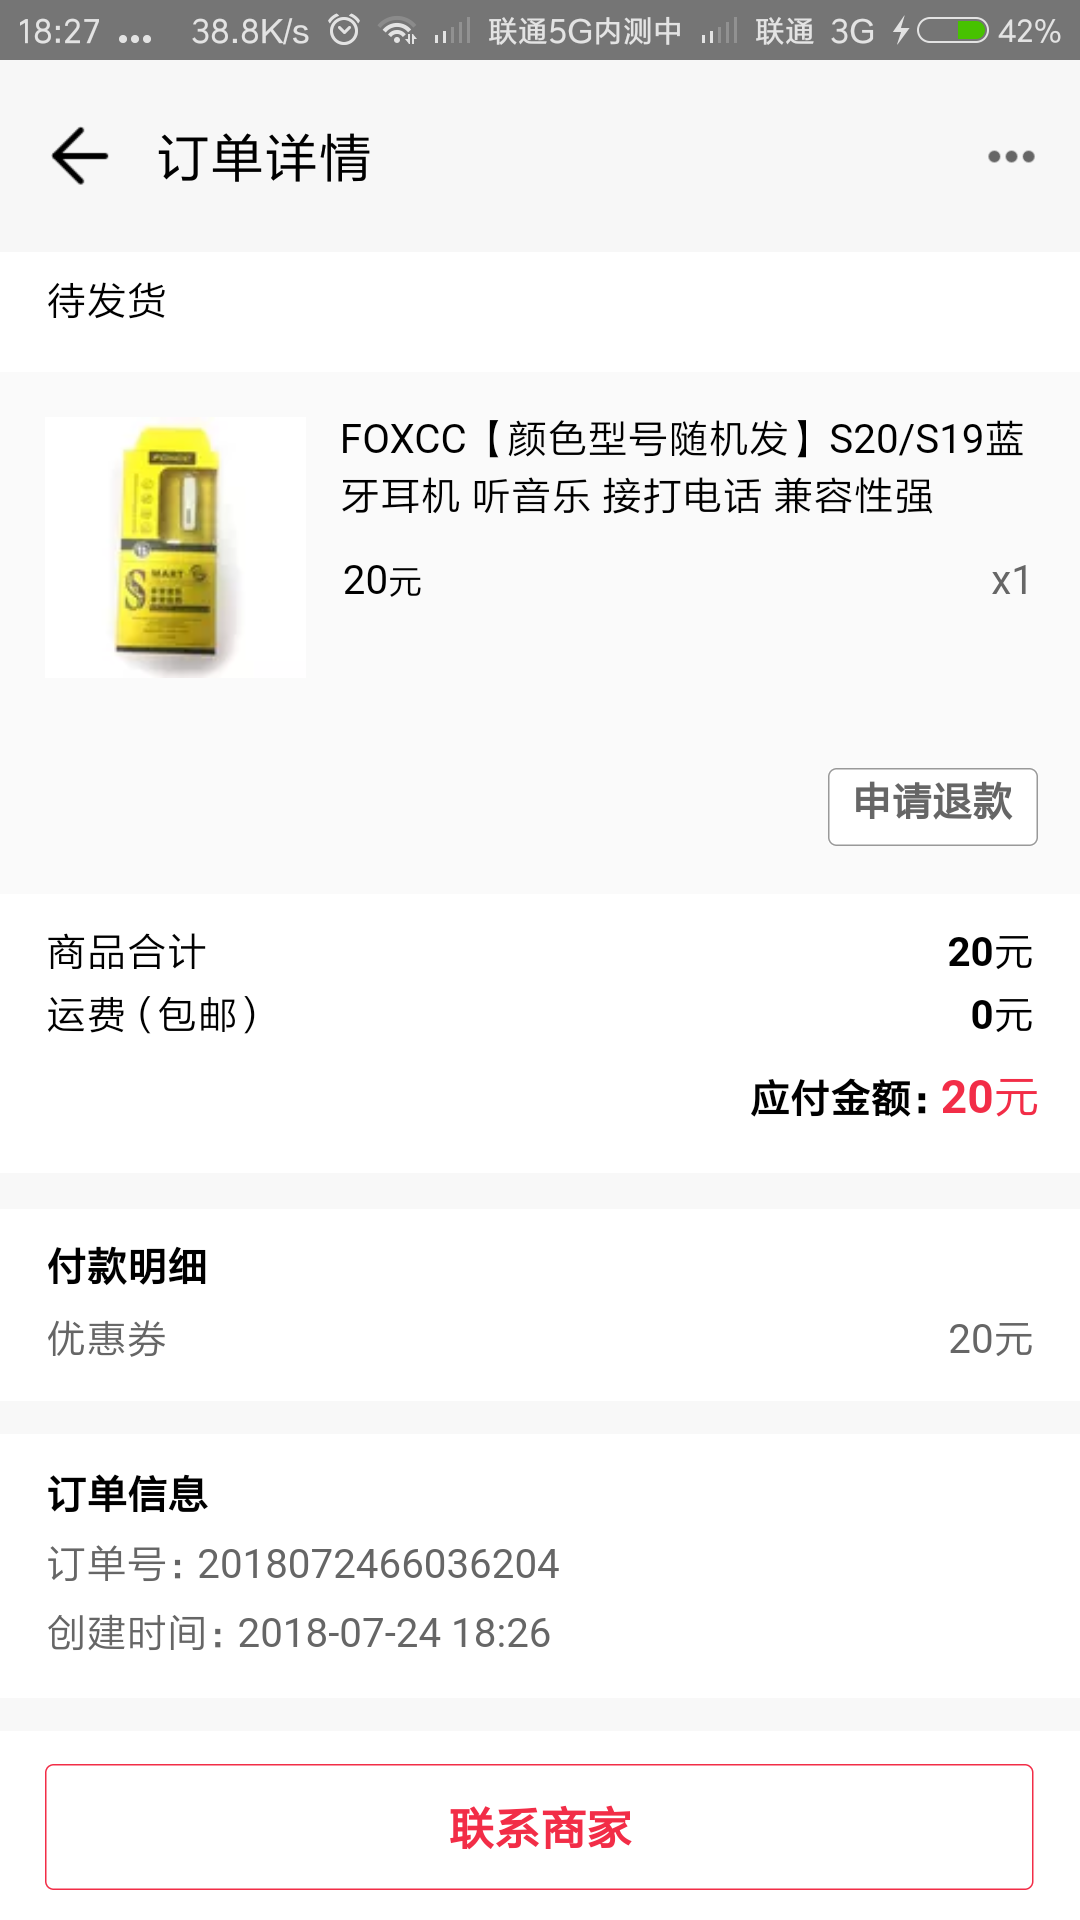 Screenshot_2018-07-24-18-27-22-890_com.paic.zhifu.wallet.activity.png